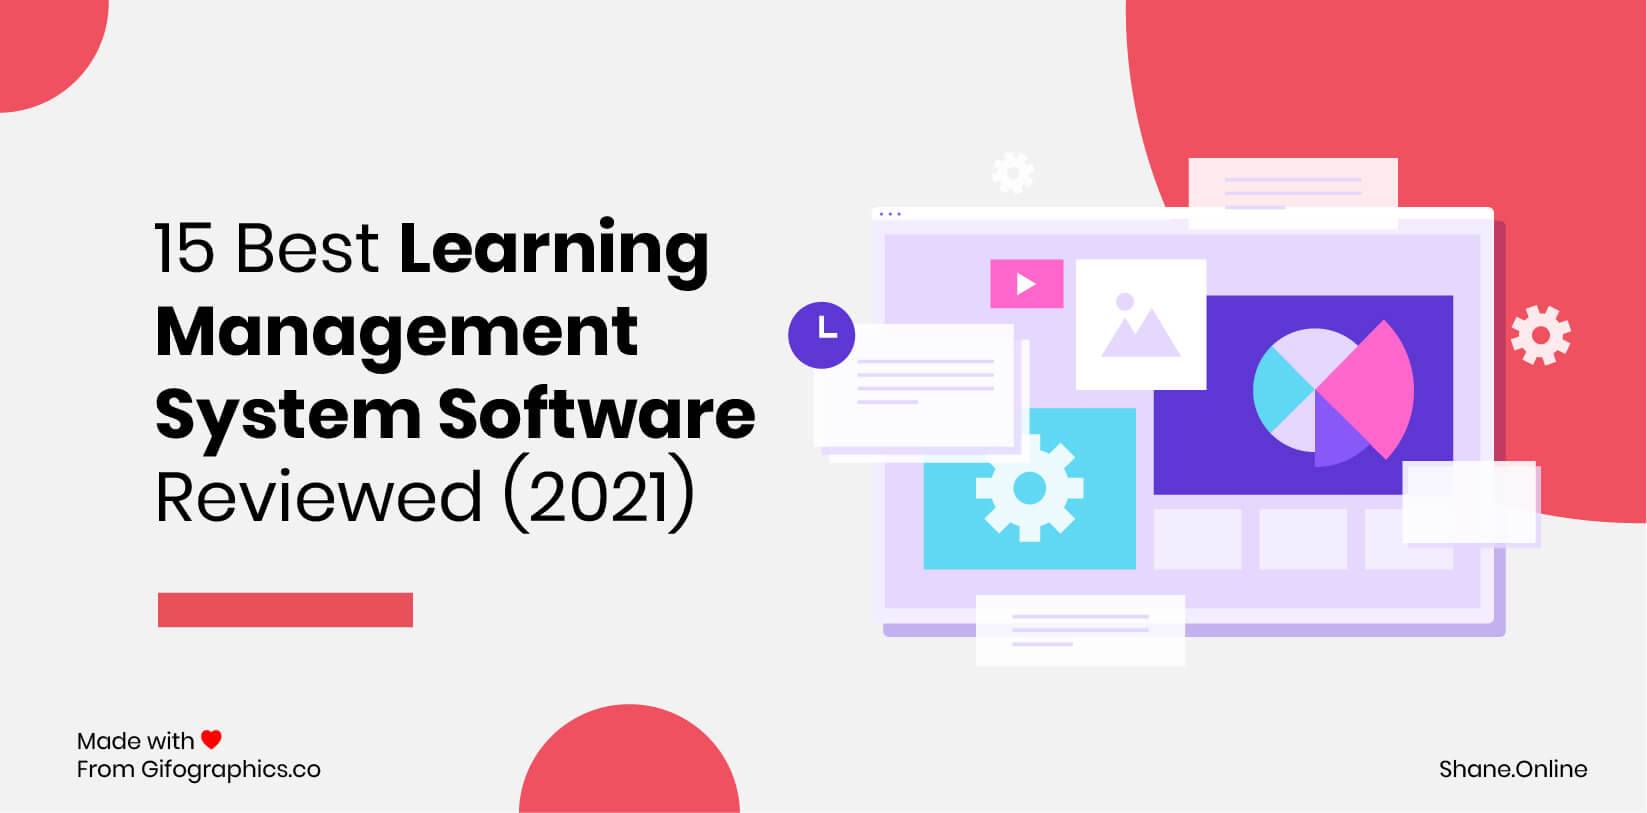 15 beste Learning Management System Software geprüft (2021)